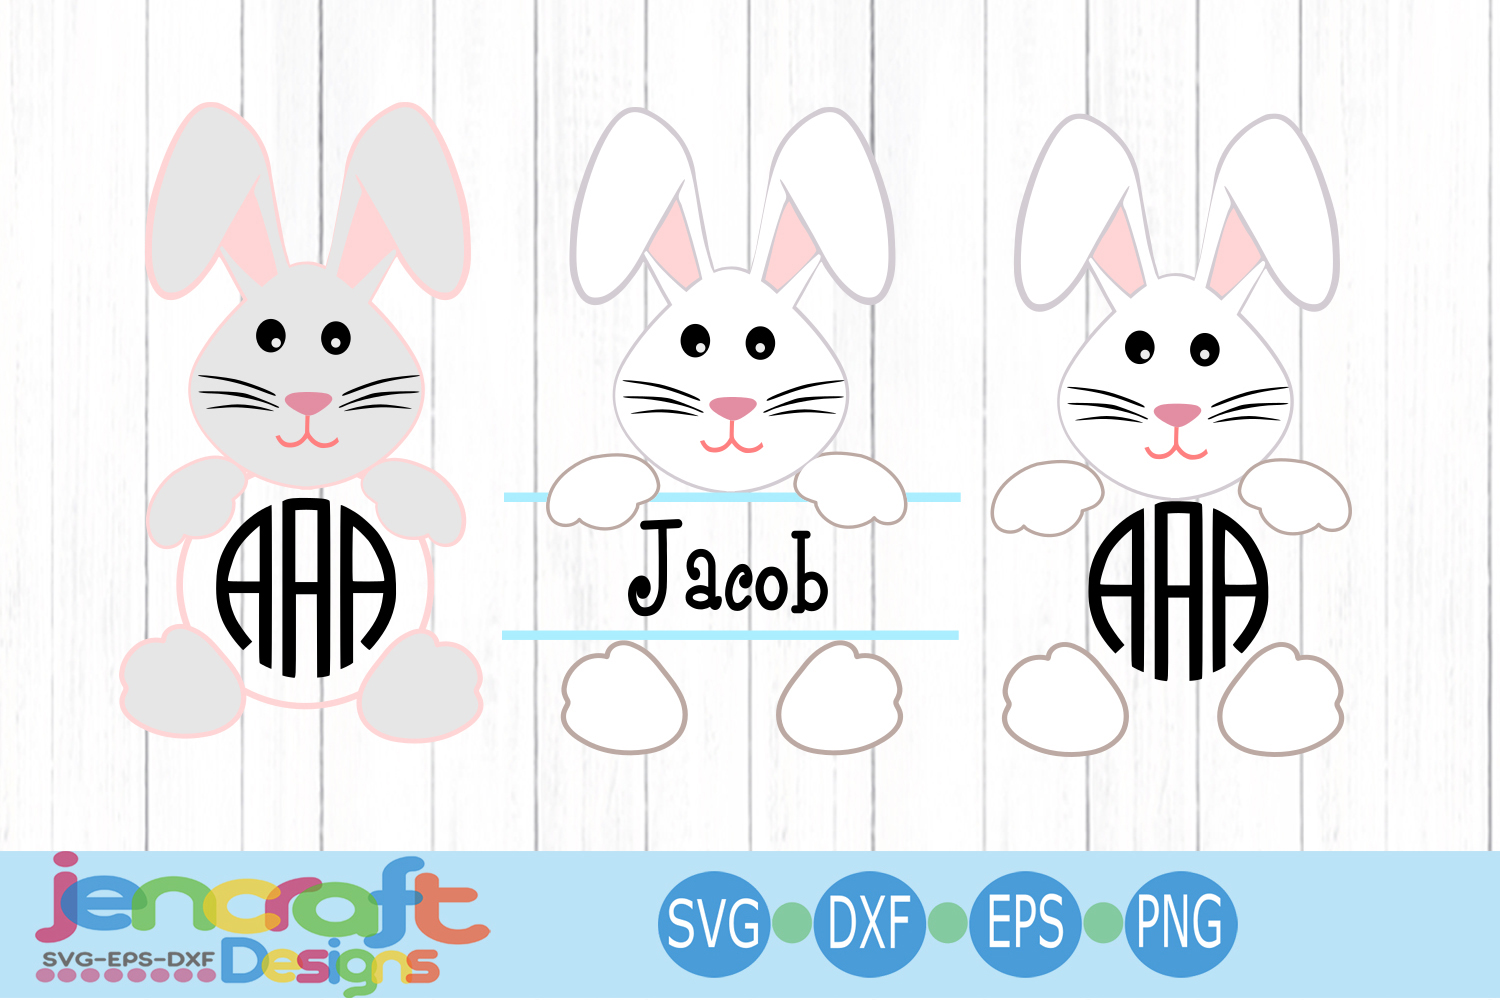 Easter Bunny Ears Svg - 96+ Popular SVG File